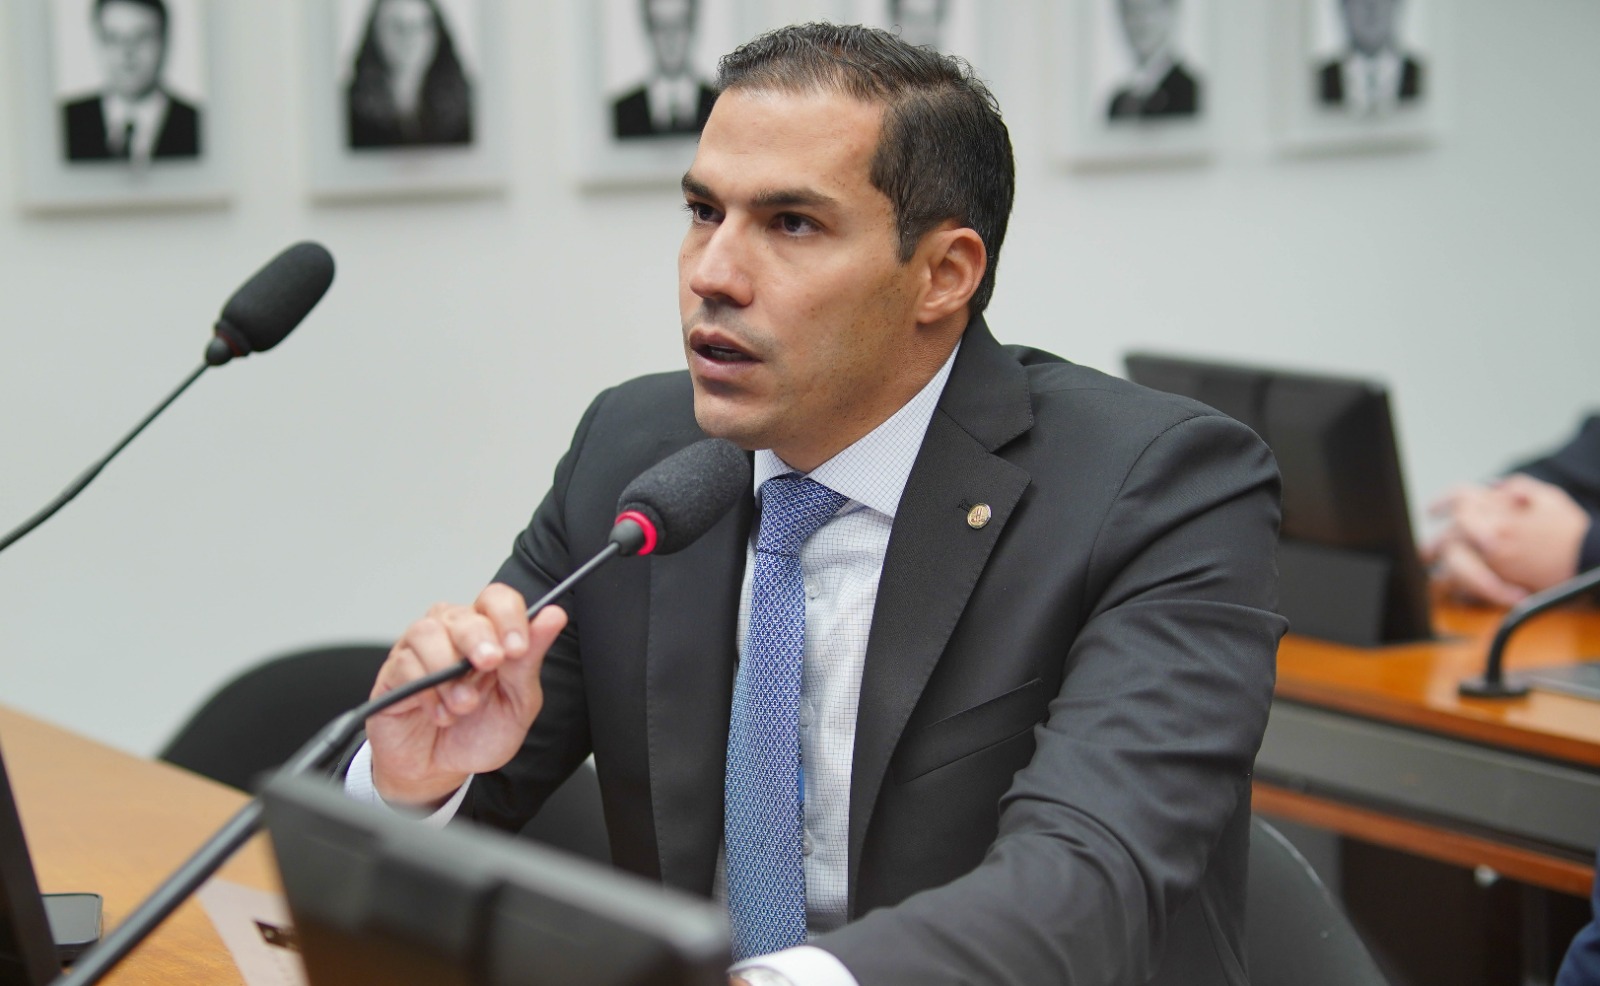  ‘Vitória irá trazer mais fôlego fiscal’, diz Gabriel Nunes após Câmara aprovar desoneração da folha para 17 setores